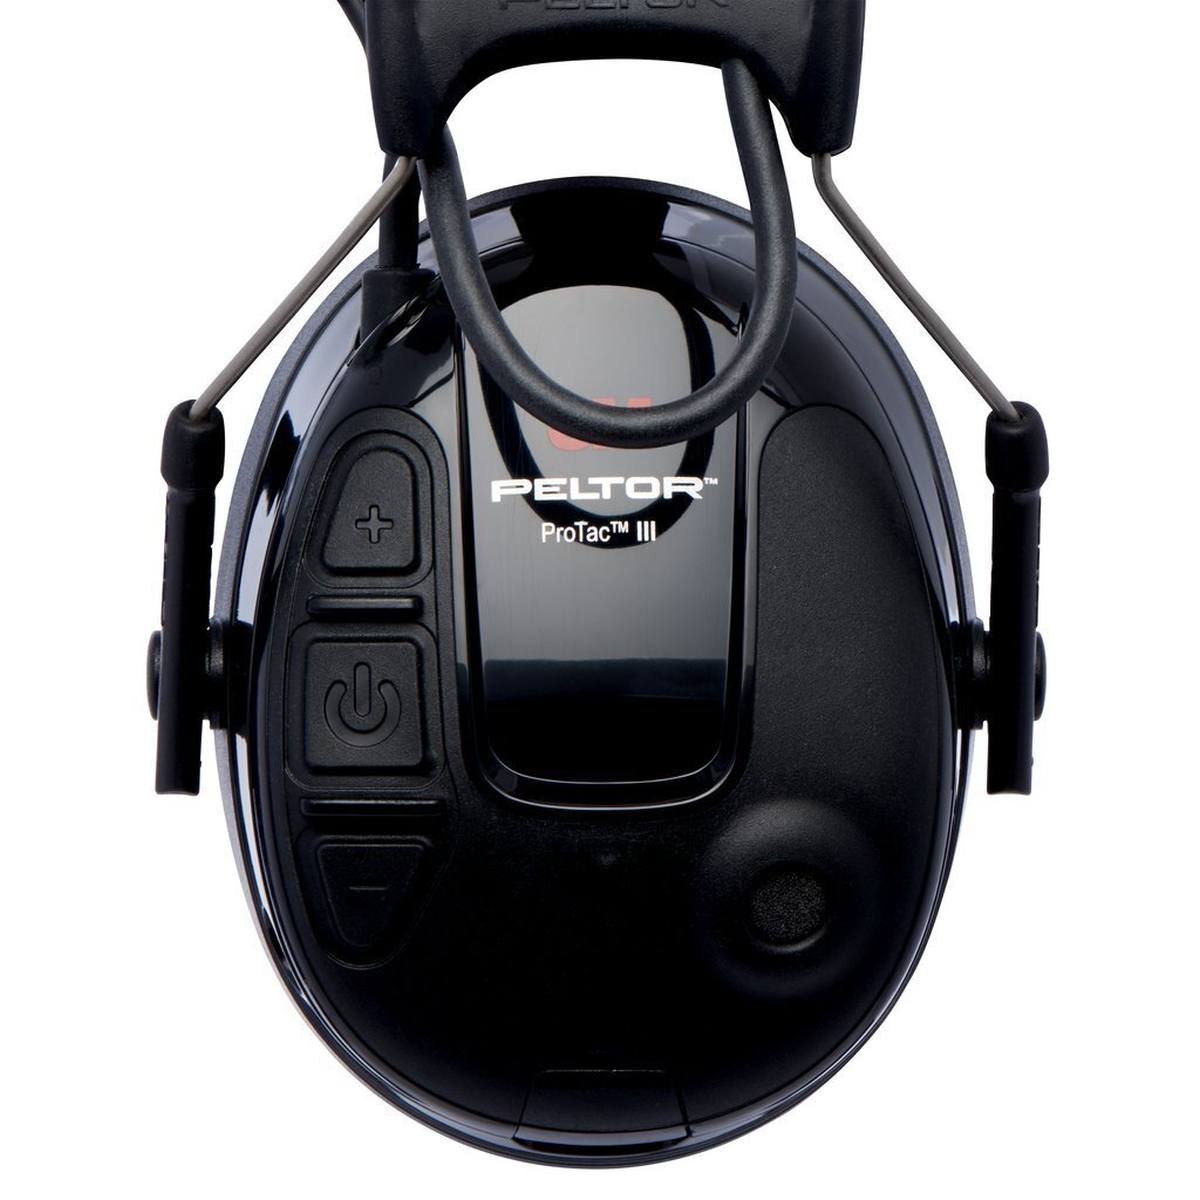 3M Peltor ProTac III Slim kuulonsuojaimet, musta, pääpanta, aktiivinen, tasosta riippuvainen vaimennustekniikka ympäristön melun havaitsemiseksi, SNR = 26 dB, musta